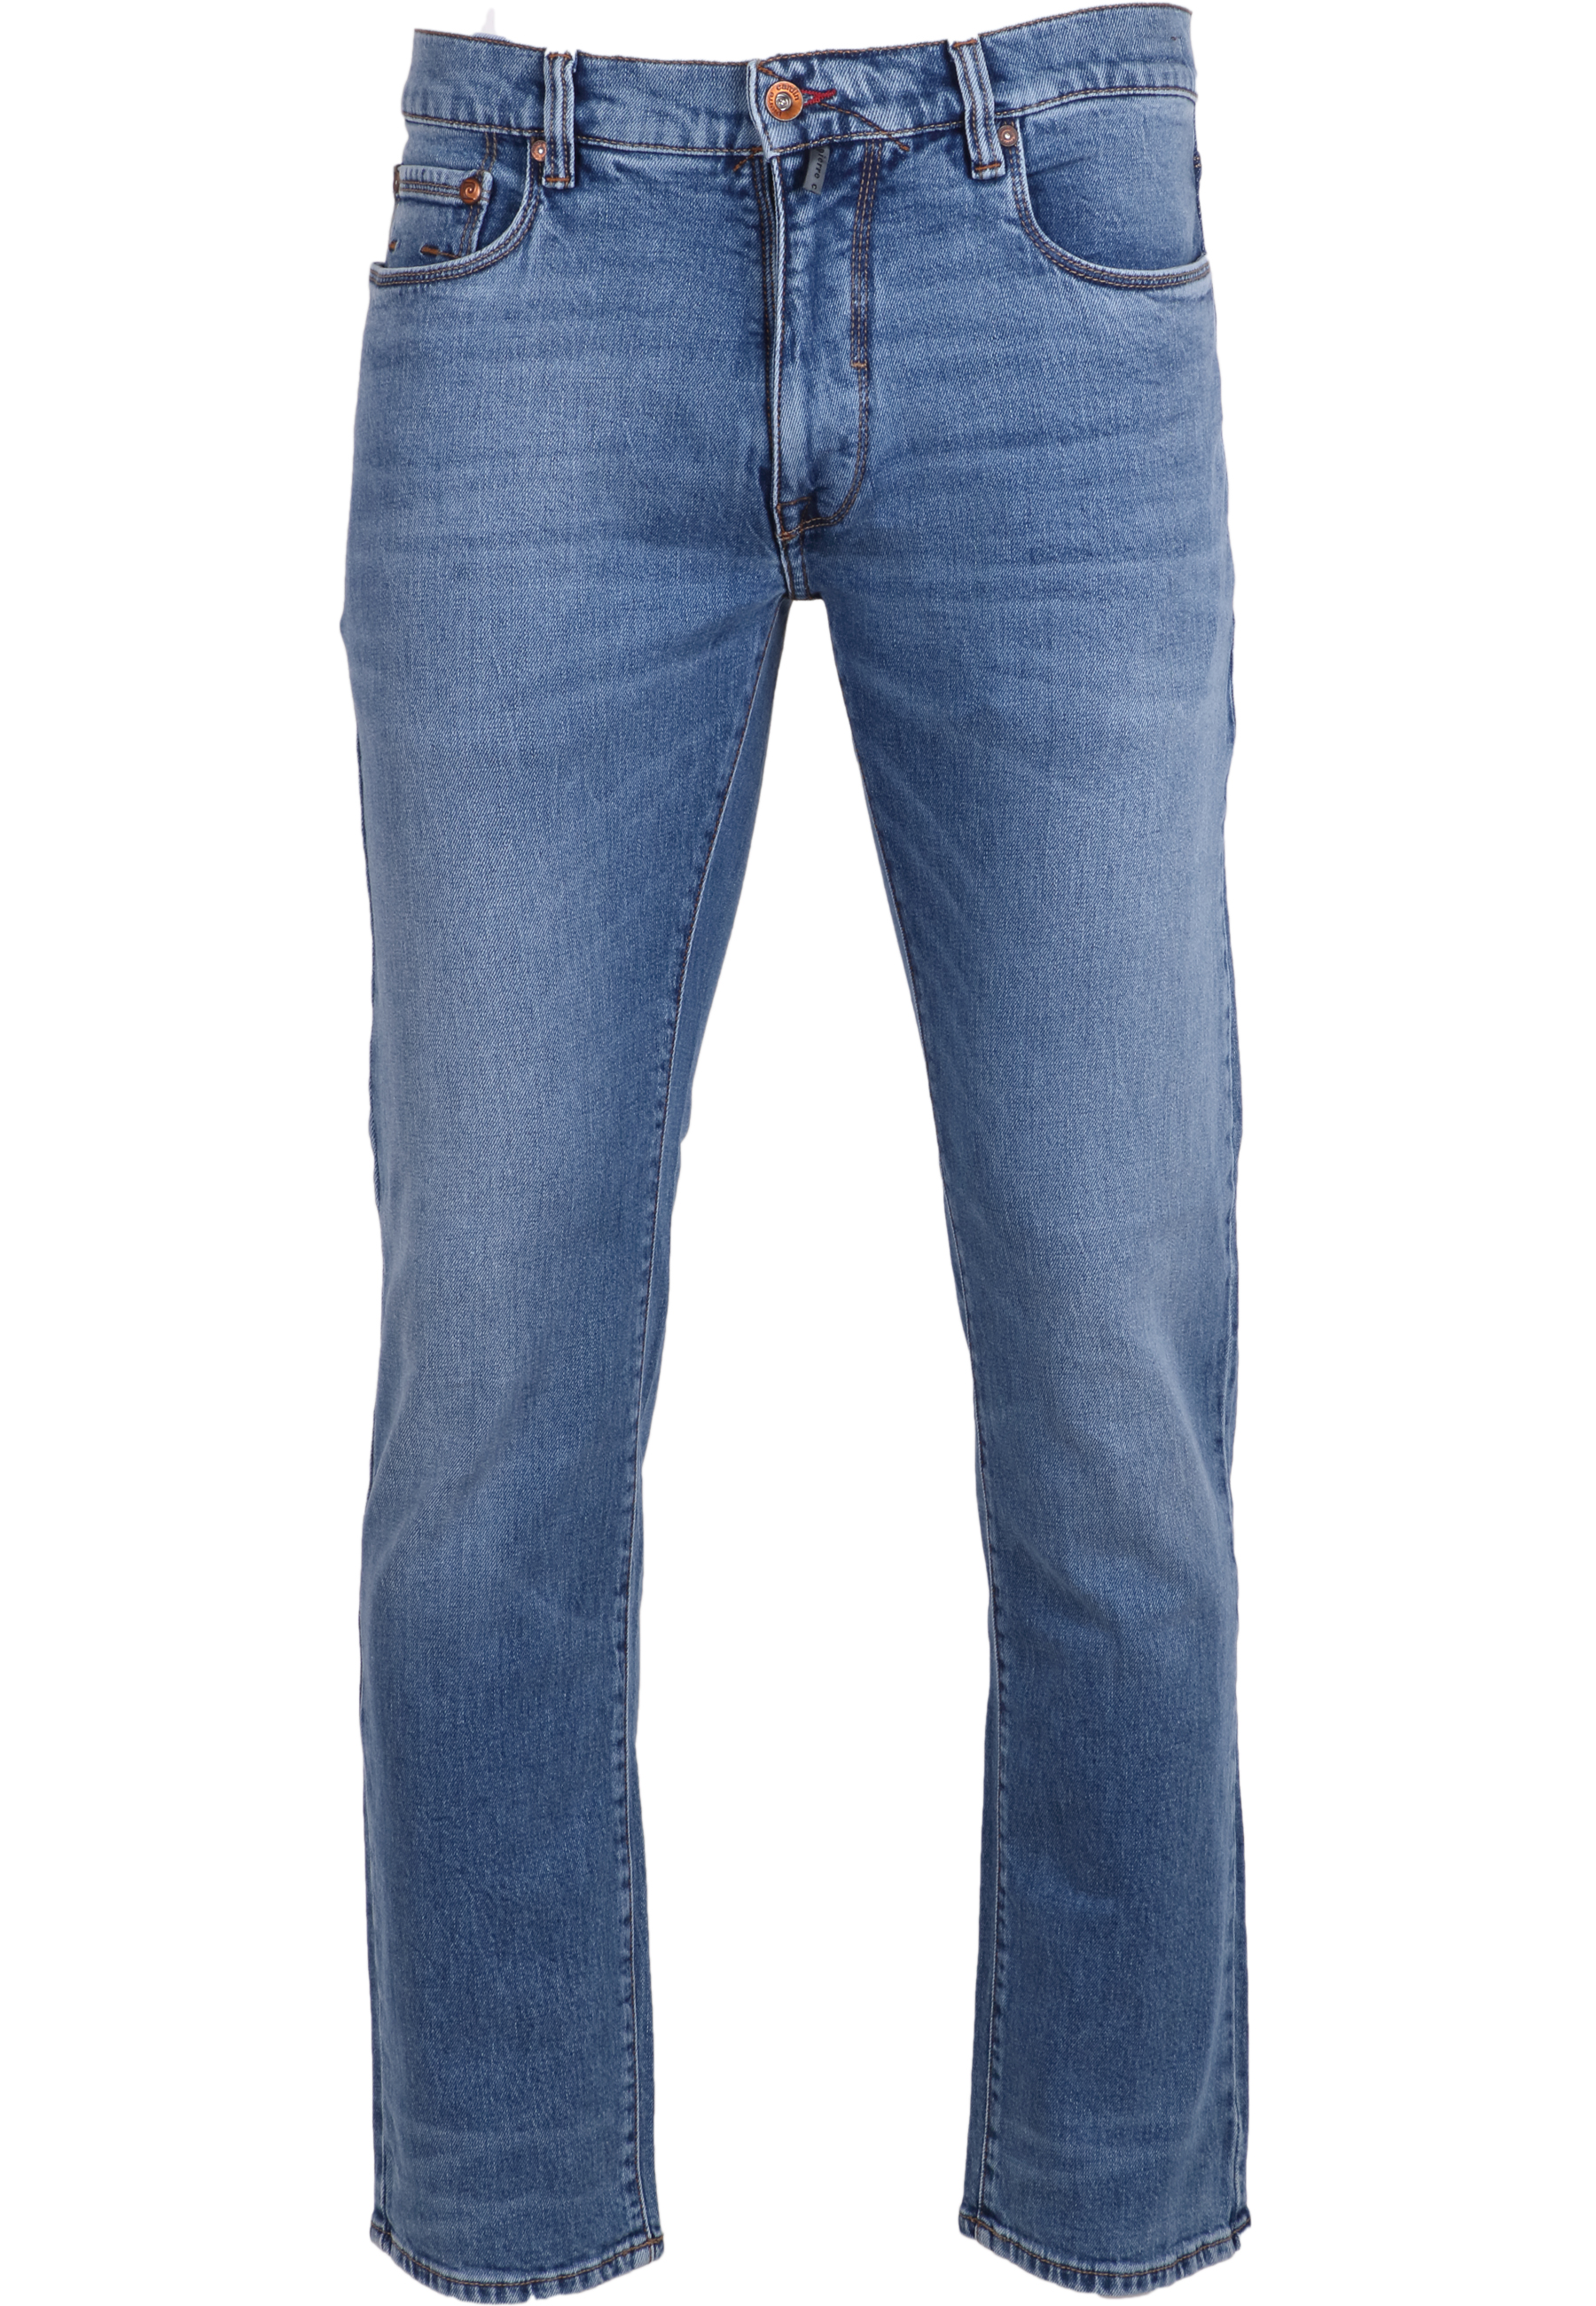 Pierre Cardin Herren Jeans Lyon tapered - blue fashion 34/32